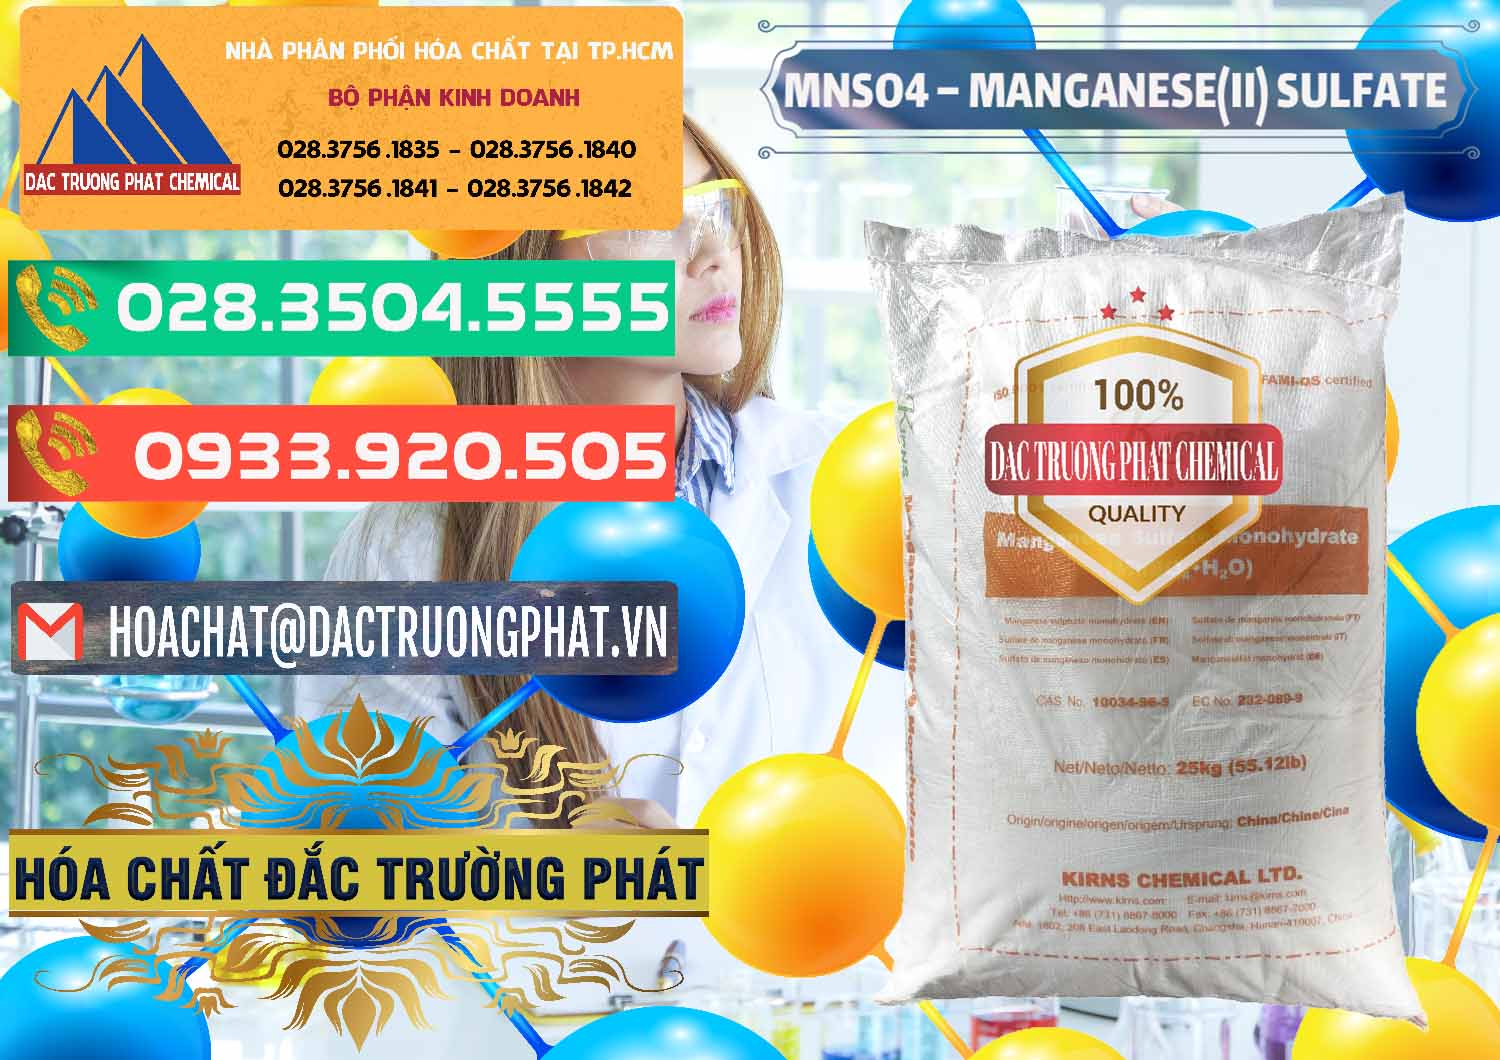 Cty bán và phân phối MNSO4 – Manganese (II) Sulfate Kirns Trung Quốc China - 0095 - Đơn vị bán - cung cấp hóa chất tại TP.HCM - congtyhoachat.com.vn